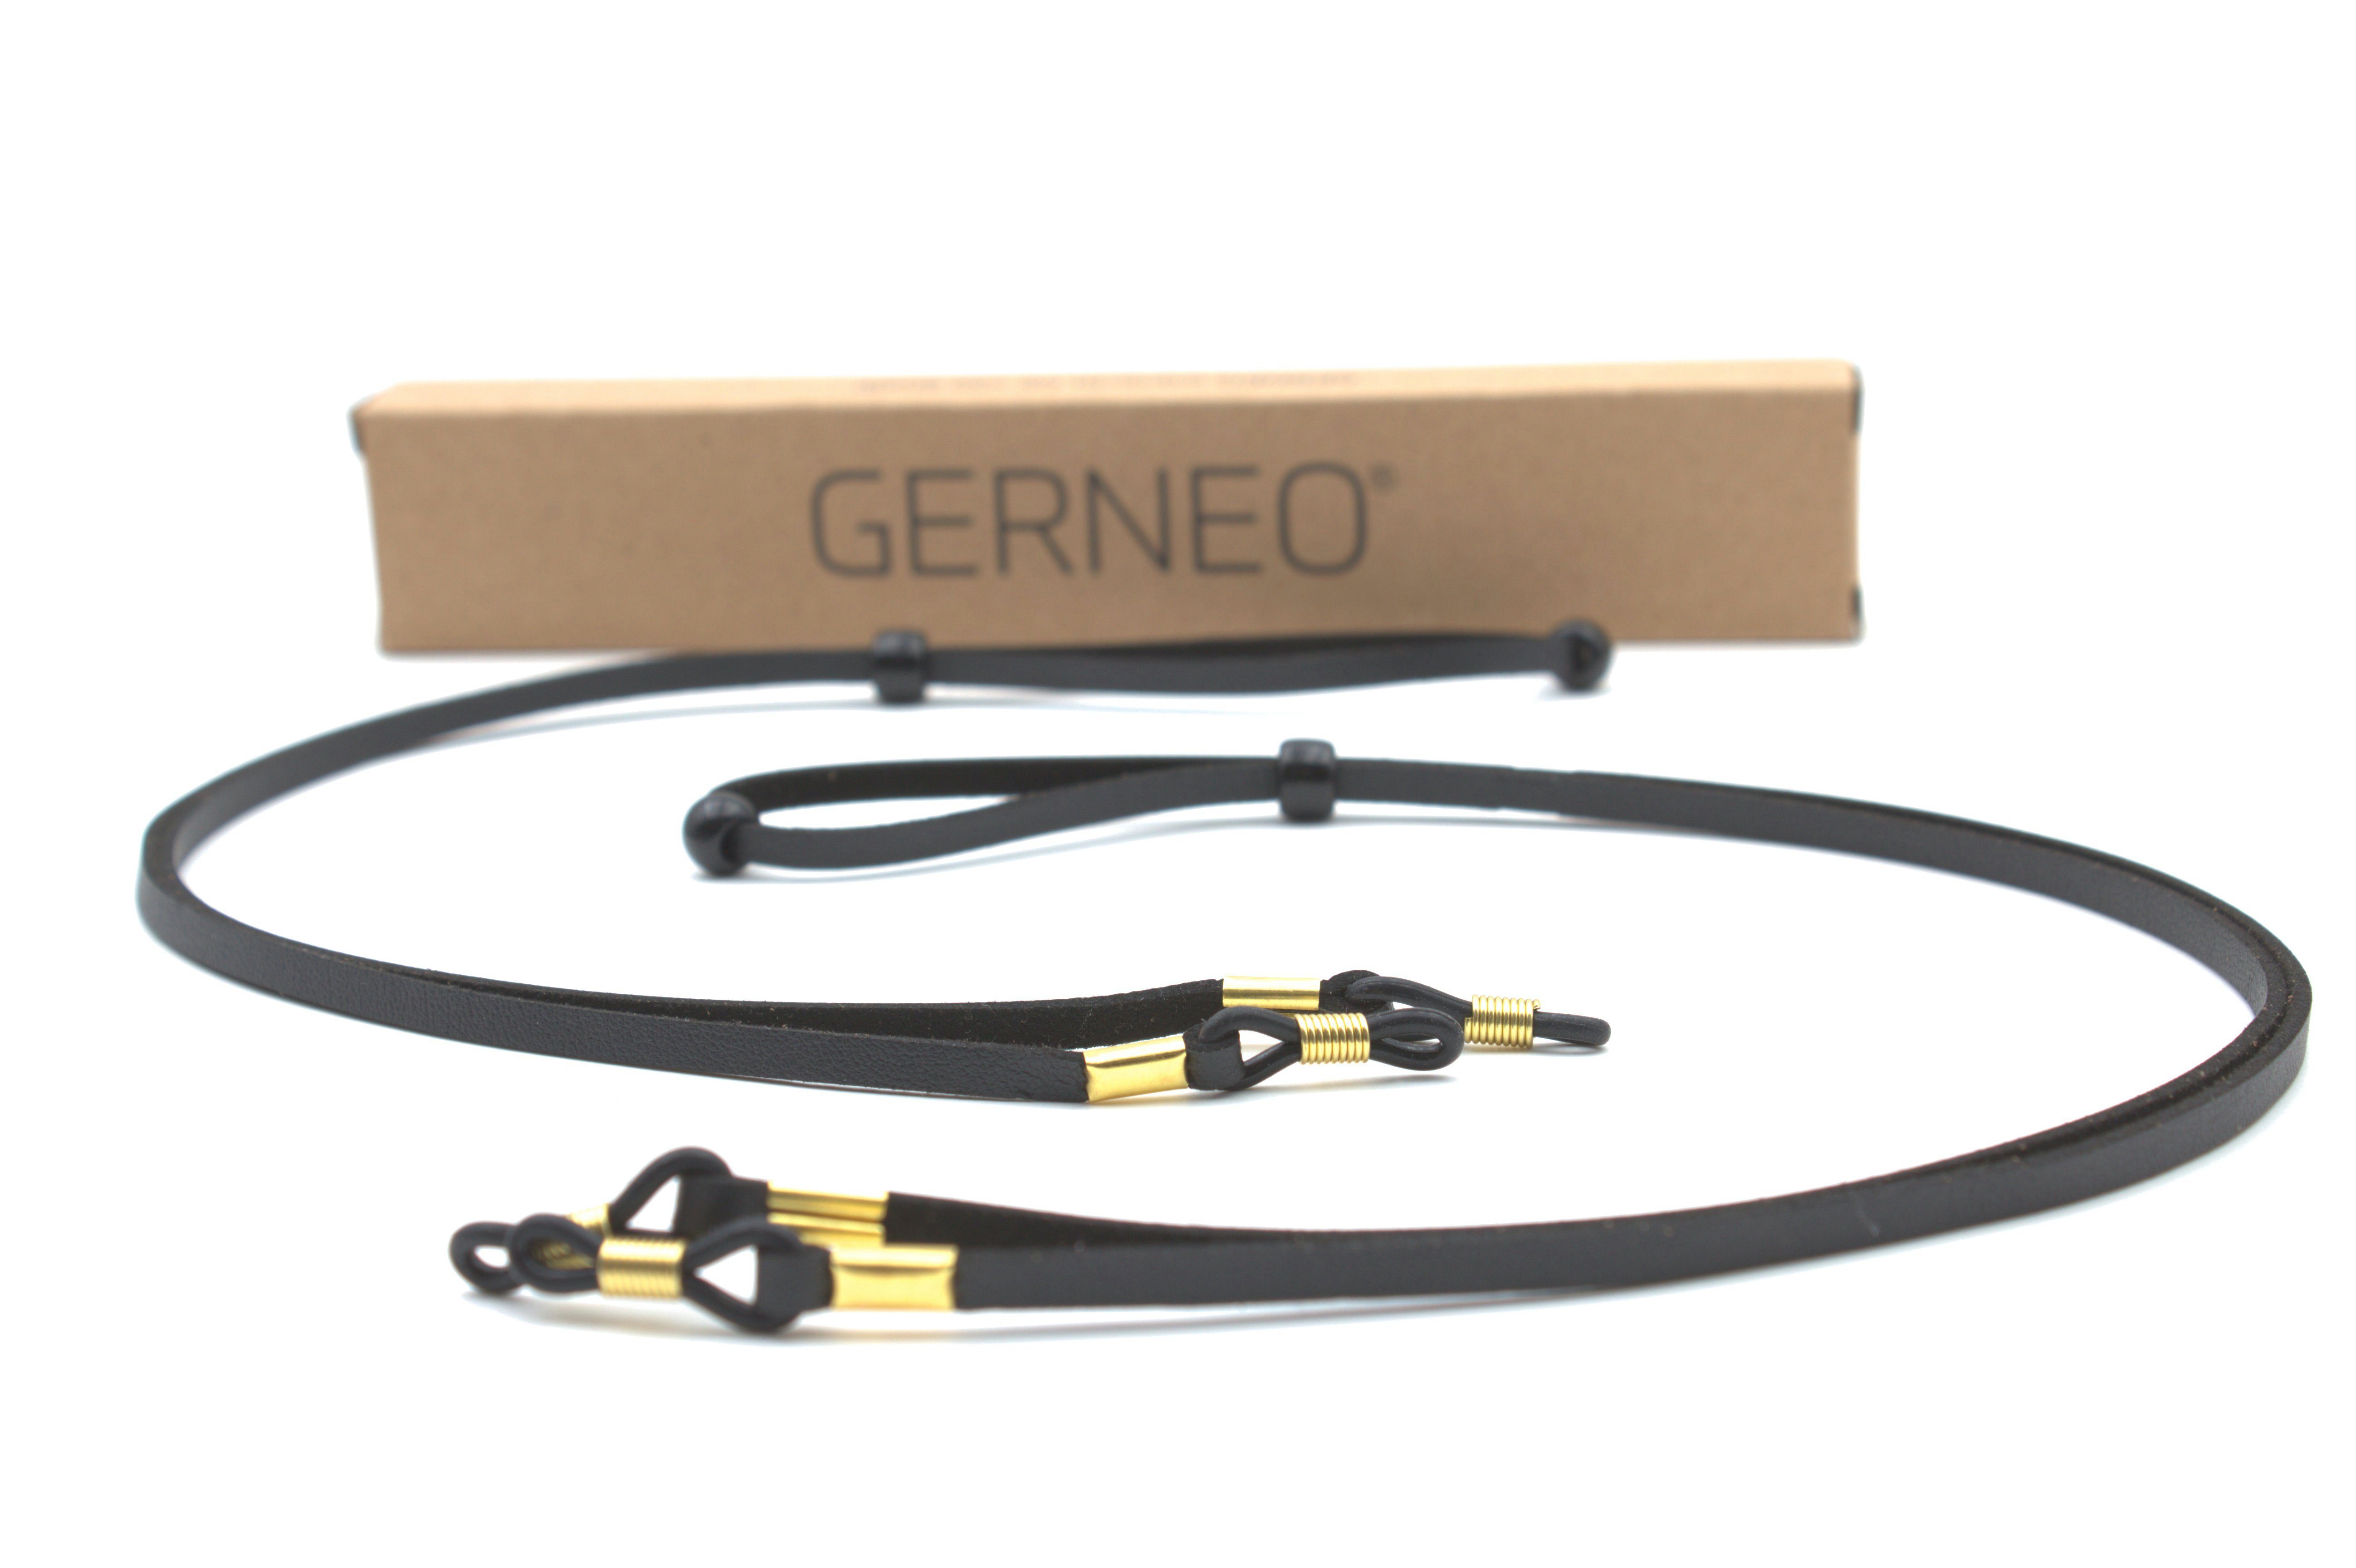 GERNEO Brillenband GERNEO® - Bilbao – hochwertiges Brillenband Leder- & Wildlederoptik, PU Brillenkordel – Band schwarz & hellbraun – Halterungen gold